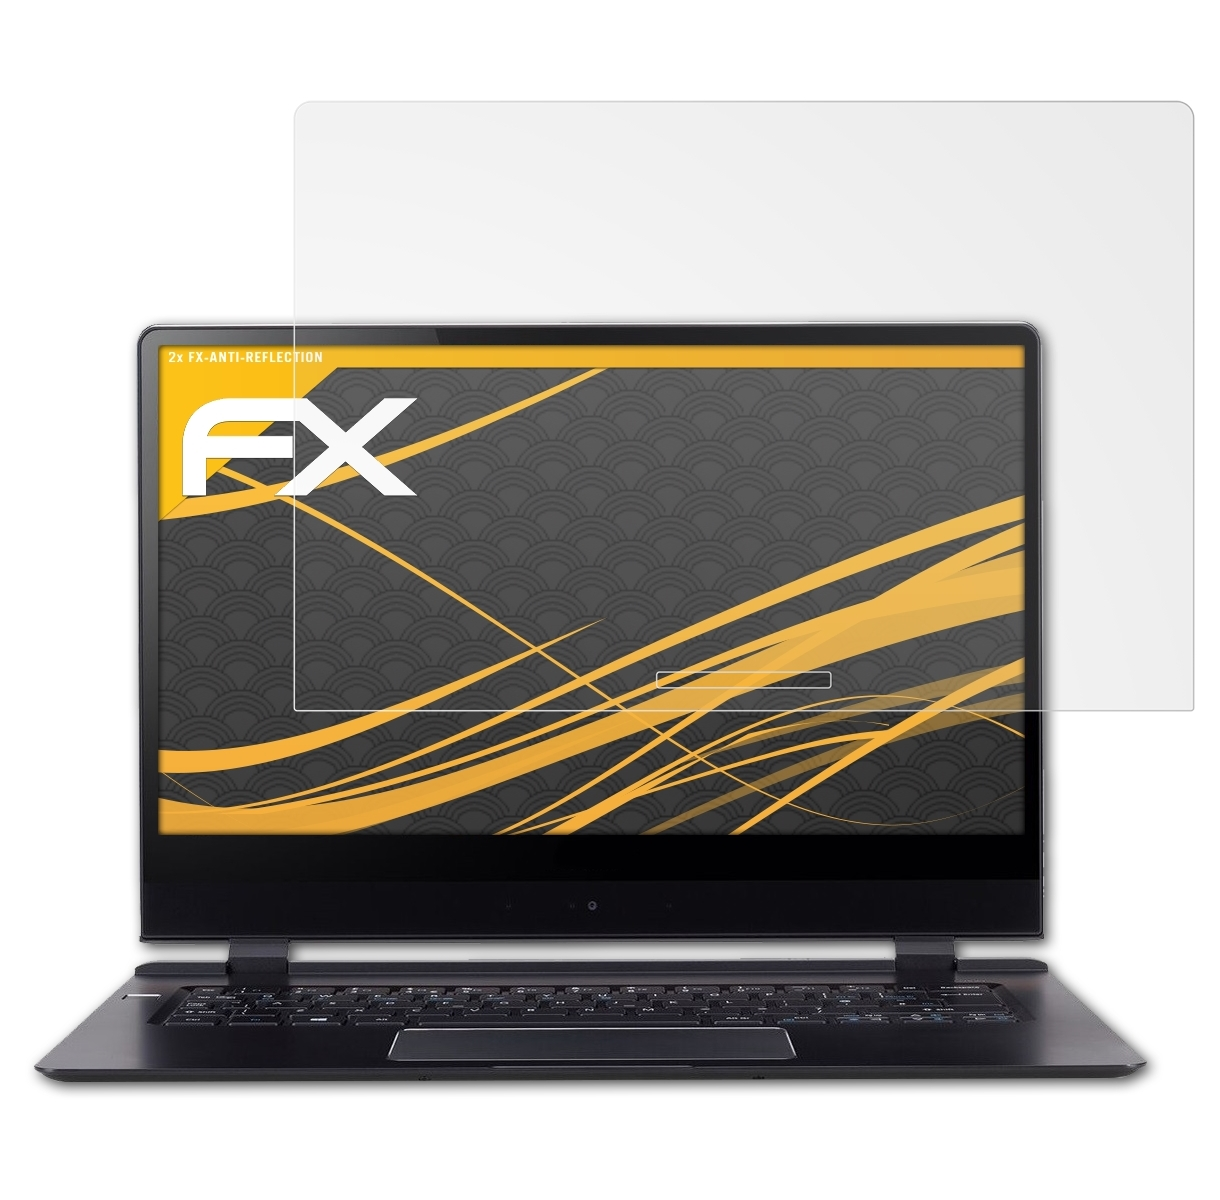 ATFOLIX 2x FX-Antireflex Displayschutz(für Acer (SF714-51T)) Swift 2018 7